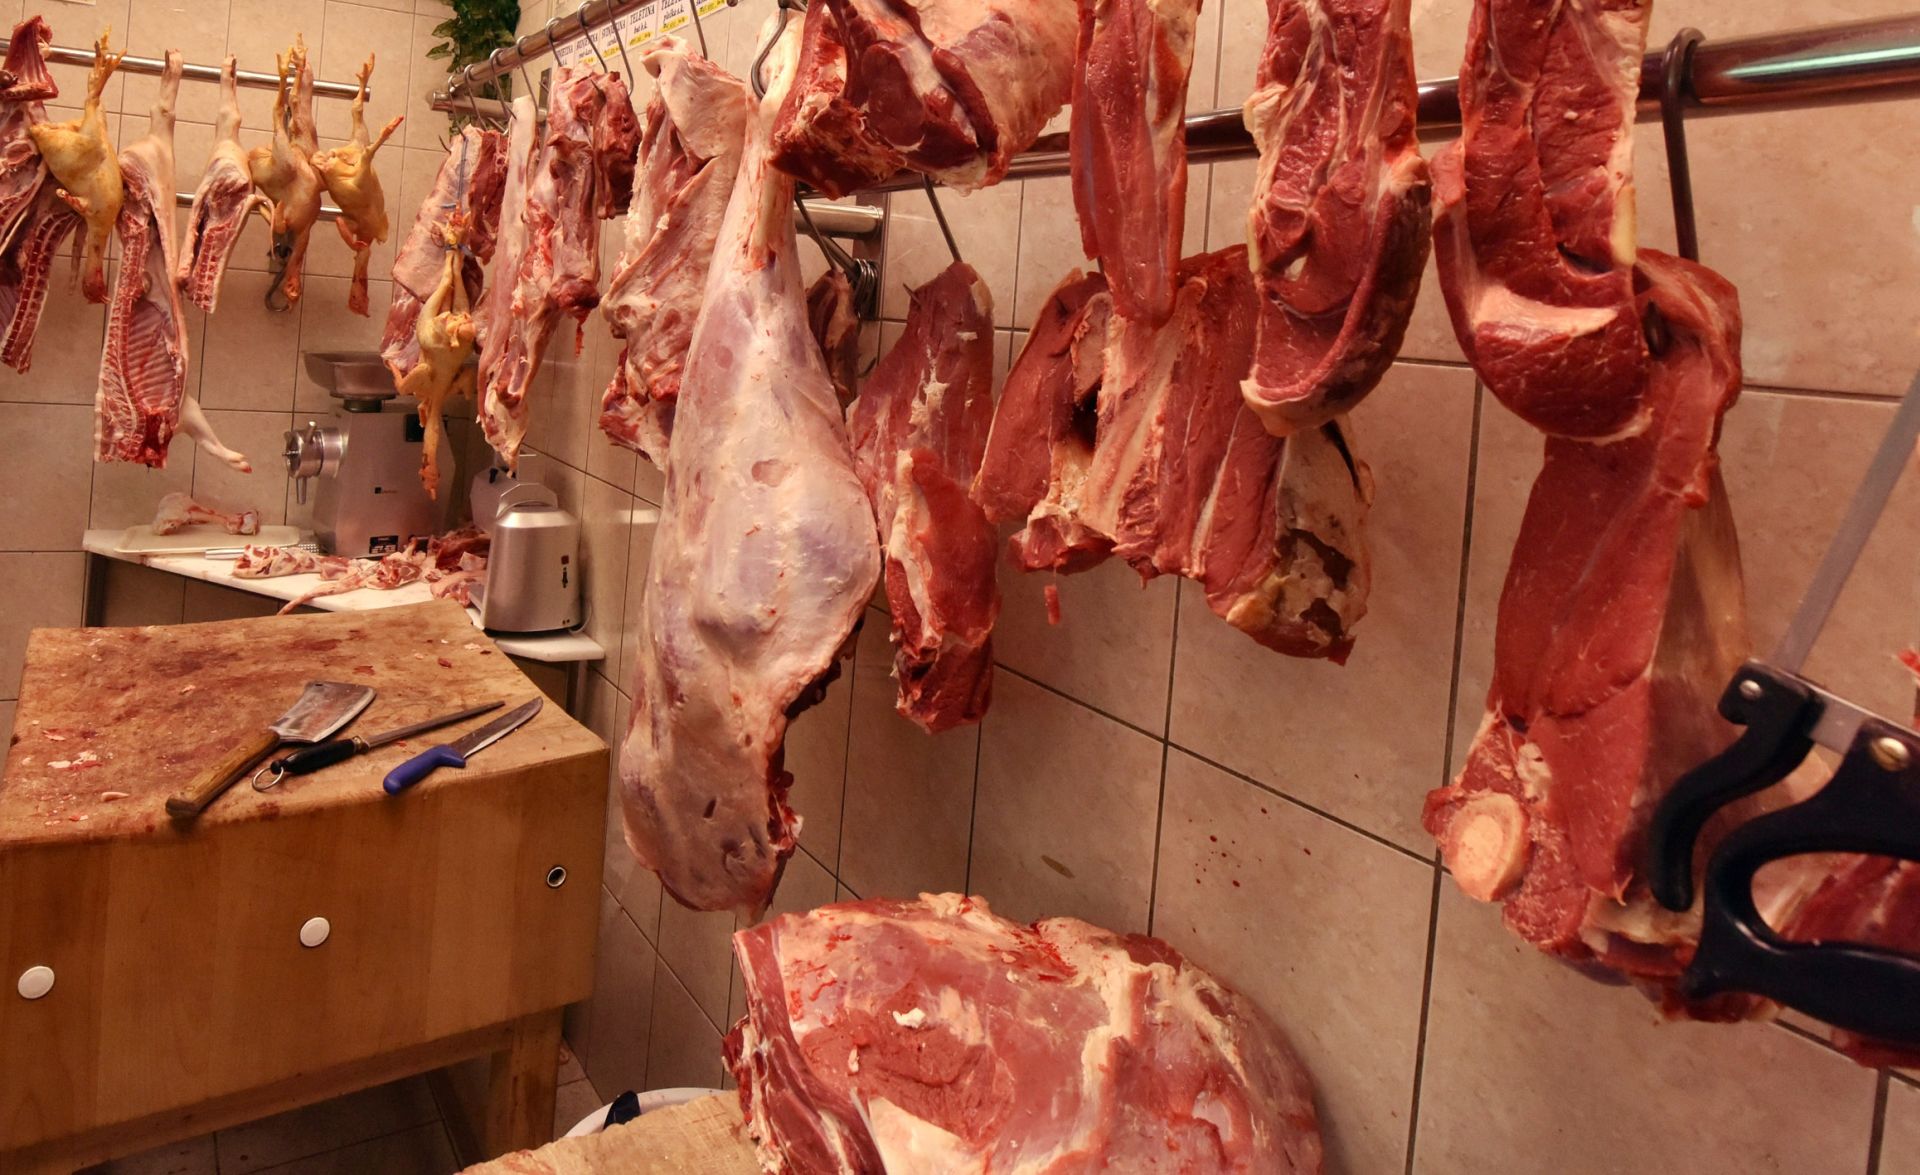 26.03.2016., Sibenik - Bogata ponuda svjezeg mesa u sibenskim mesnicama.
Photo: Hrvoje Jelavic/PIXSELL